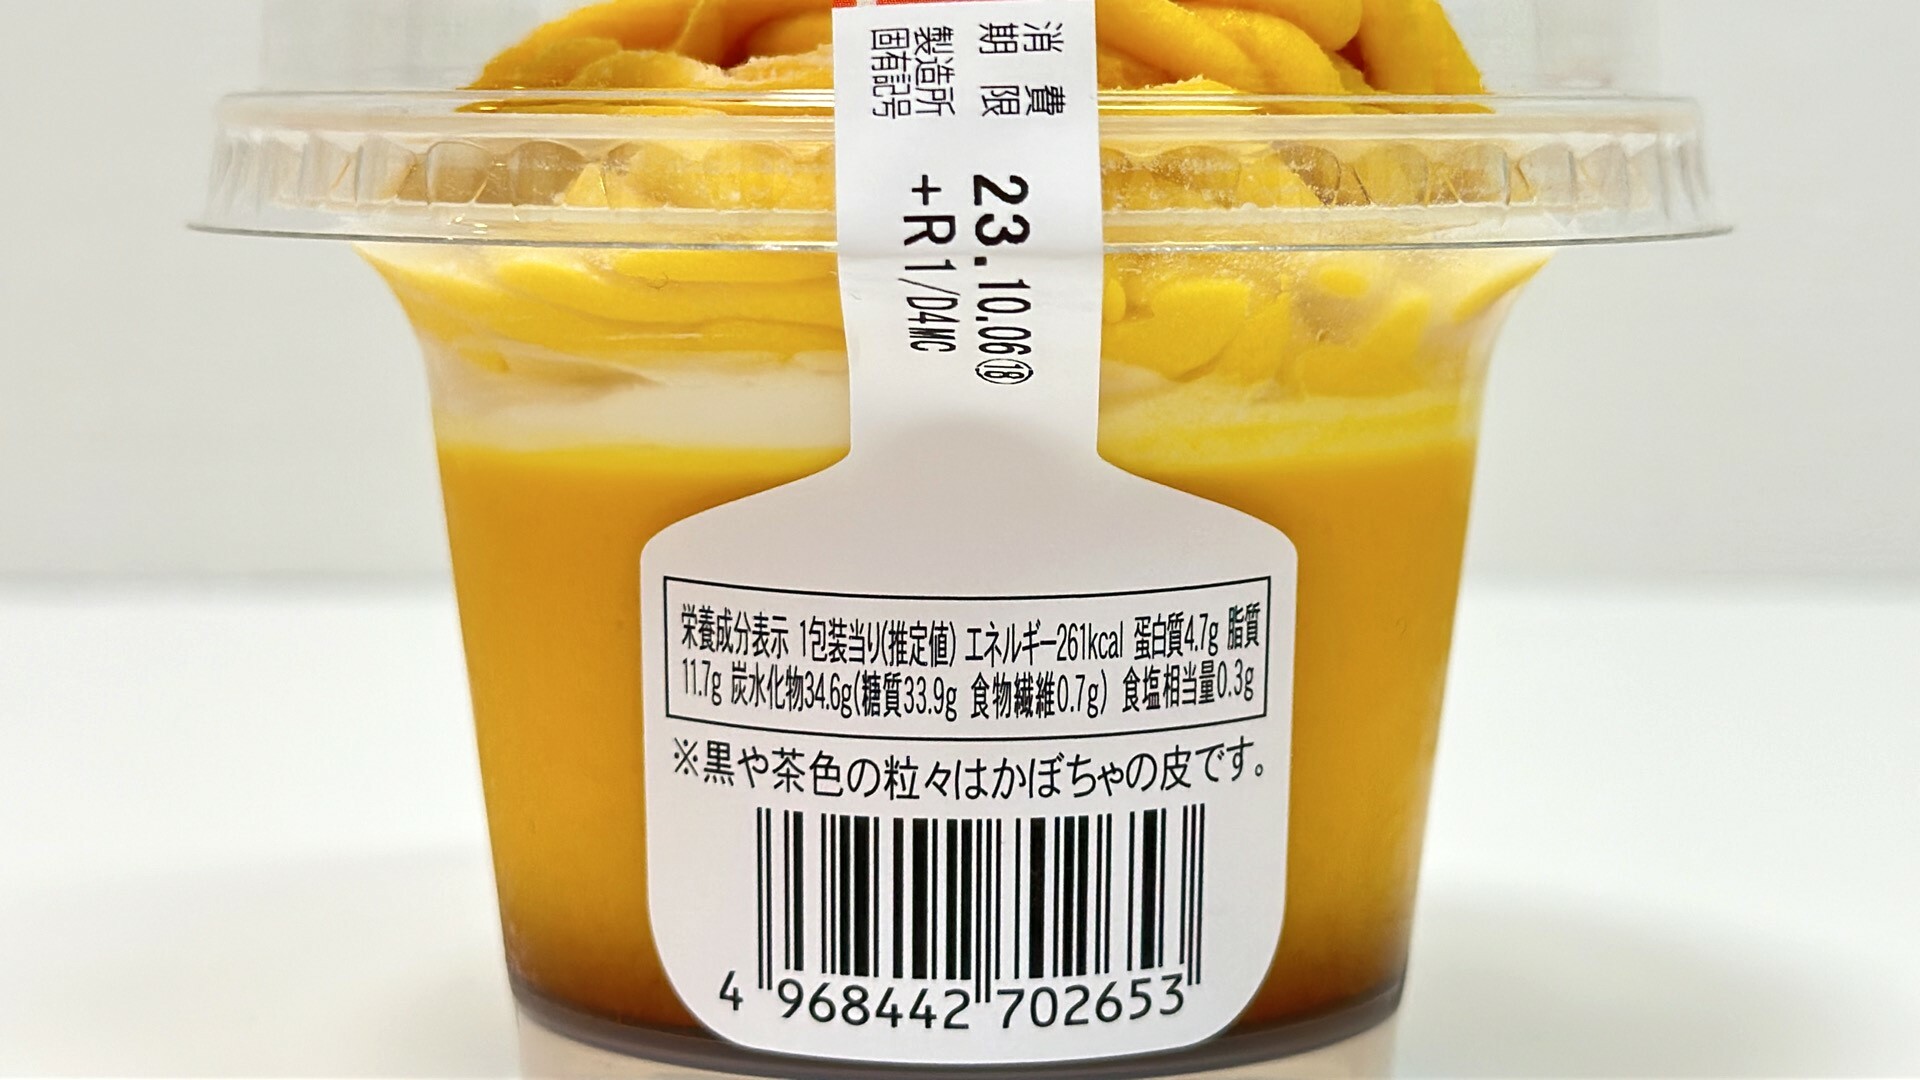 ファミマ新作北海道かぼちゃのモンブランプリンの栄養成分表示